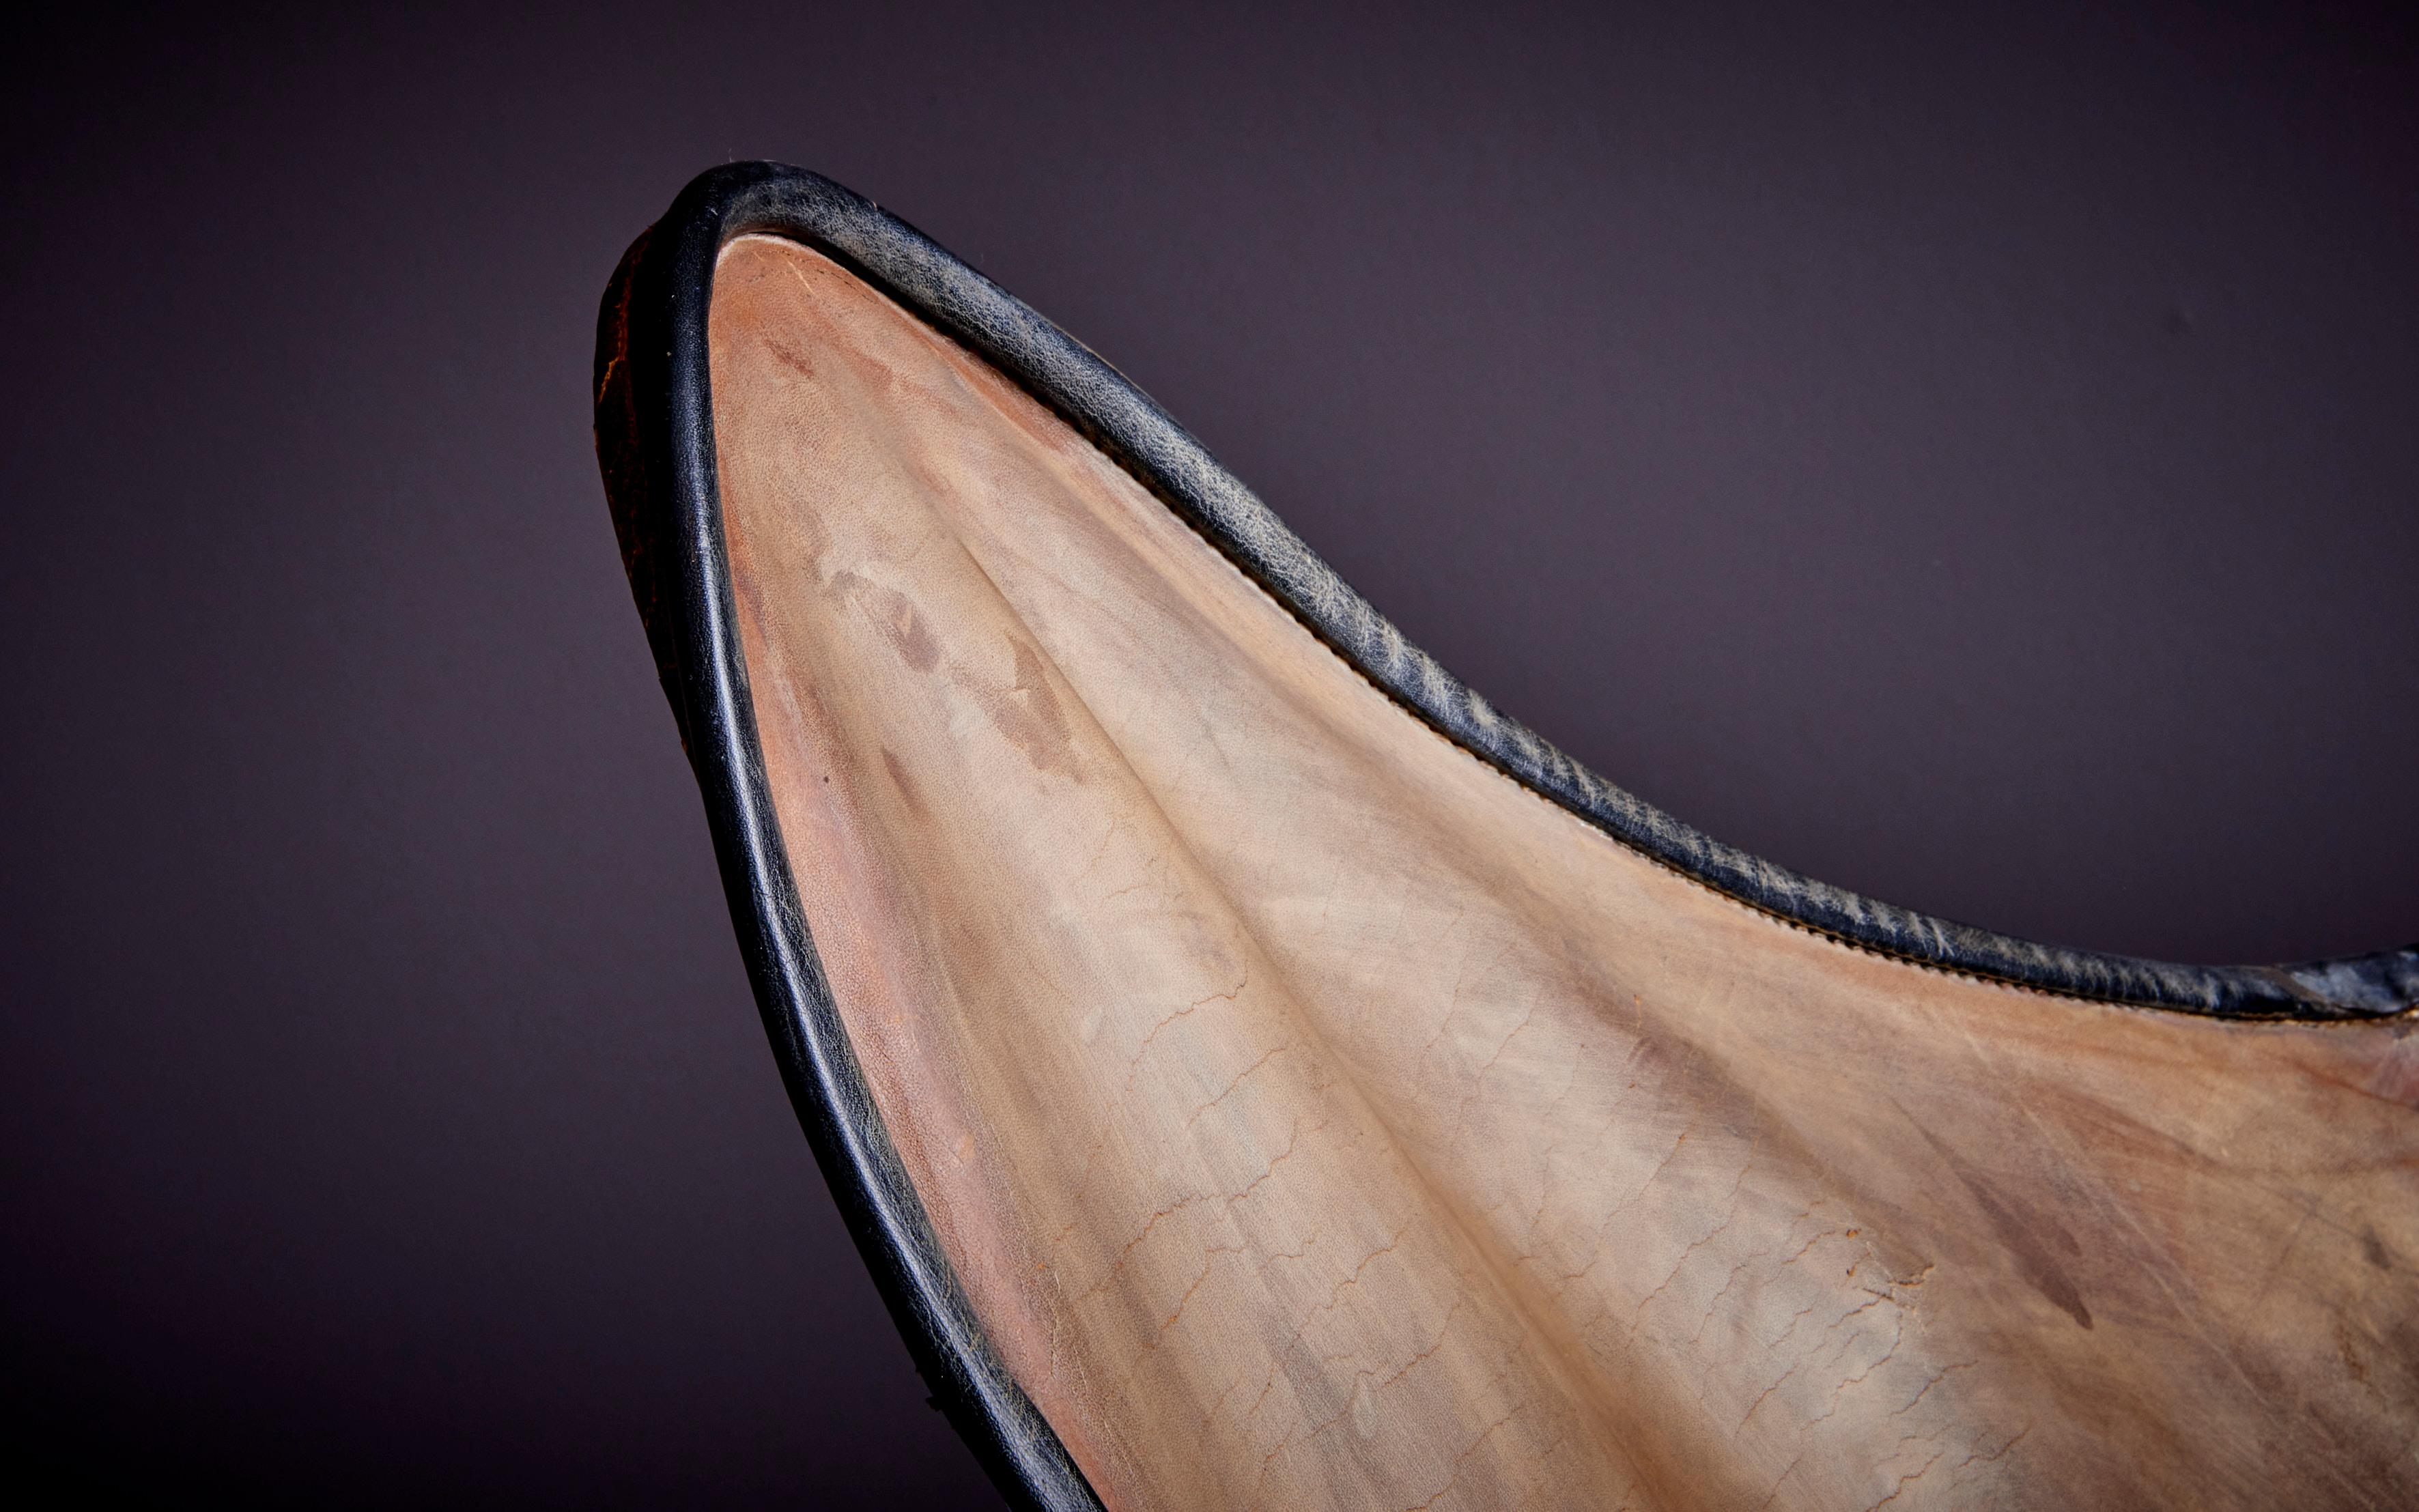 Wir haben ein weiteres Modell des Schmetterlingsstuhls mit hellbraunem Leder aufgeführt. 
 
Der Schmetterlingsstuhl, auch bekannt als BKF-Stuhl oder Hardoy-Stuhl, ist ein Klappstuhl mit einem einfachen, aber eleganten Design. Der Stuhl besteht aus